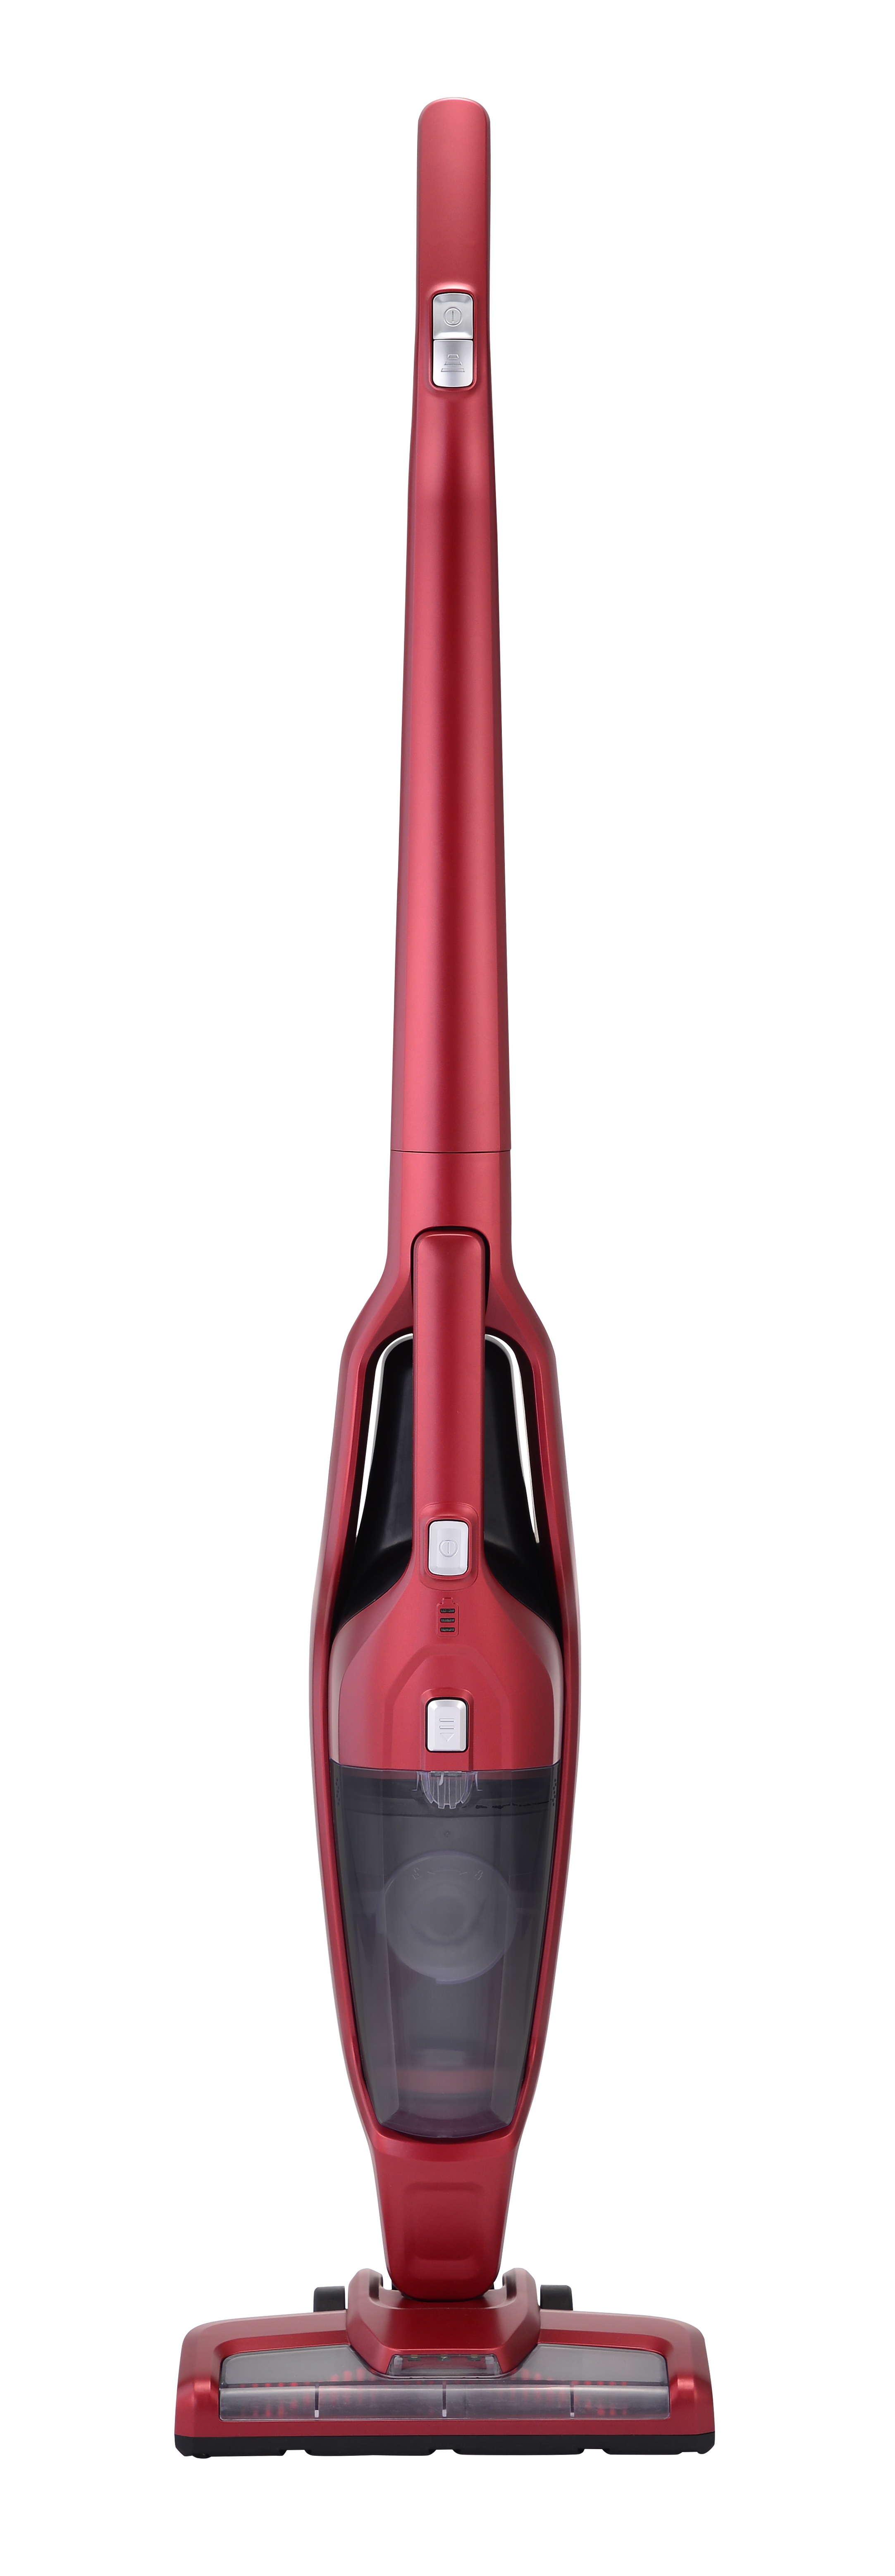 CJ192 2-in-1 Cordless Stick Vacuum Cleaner